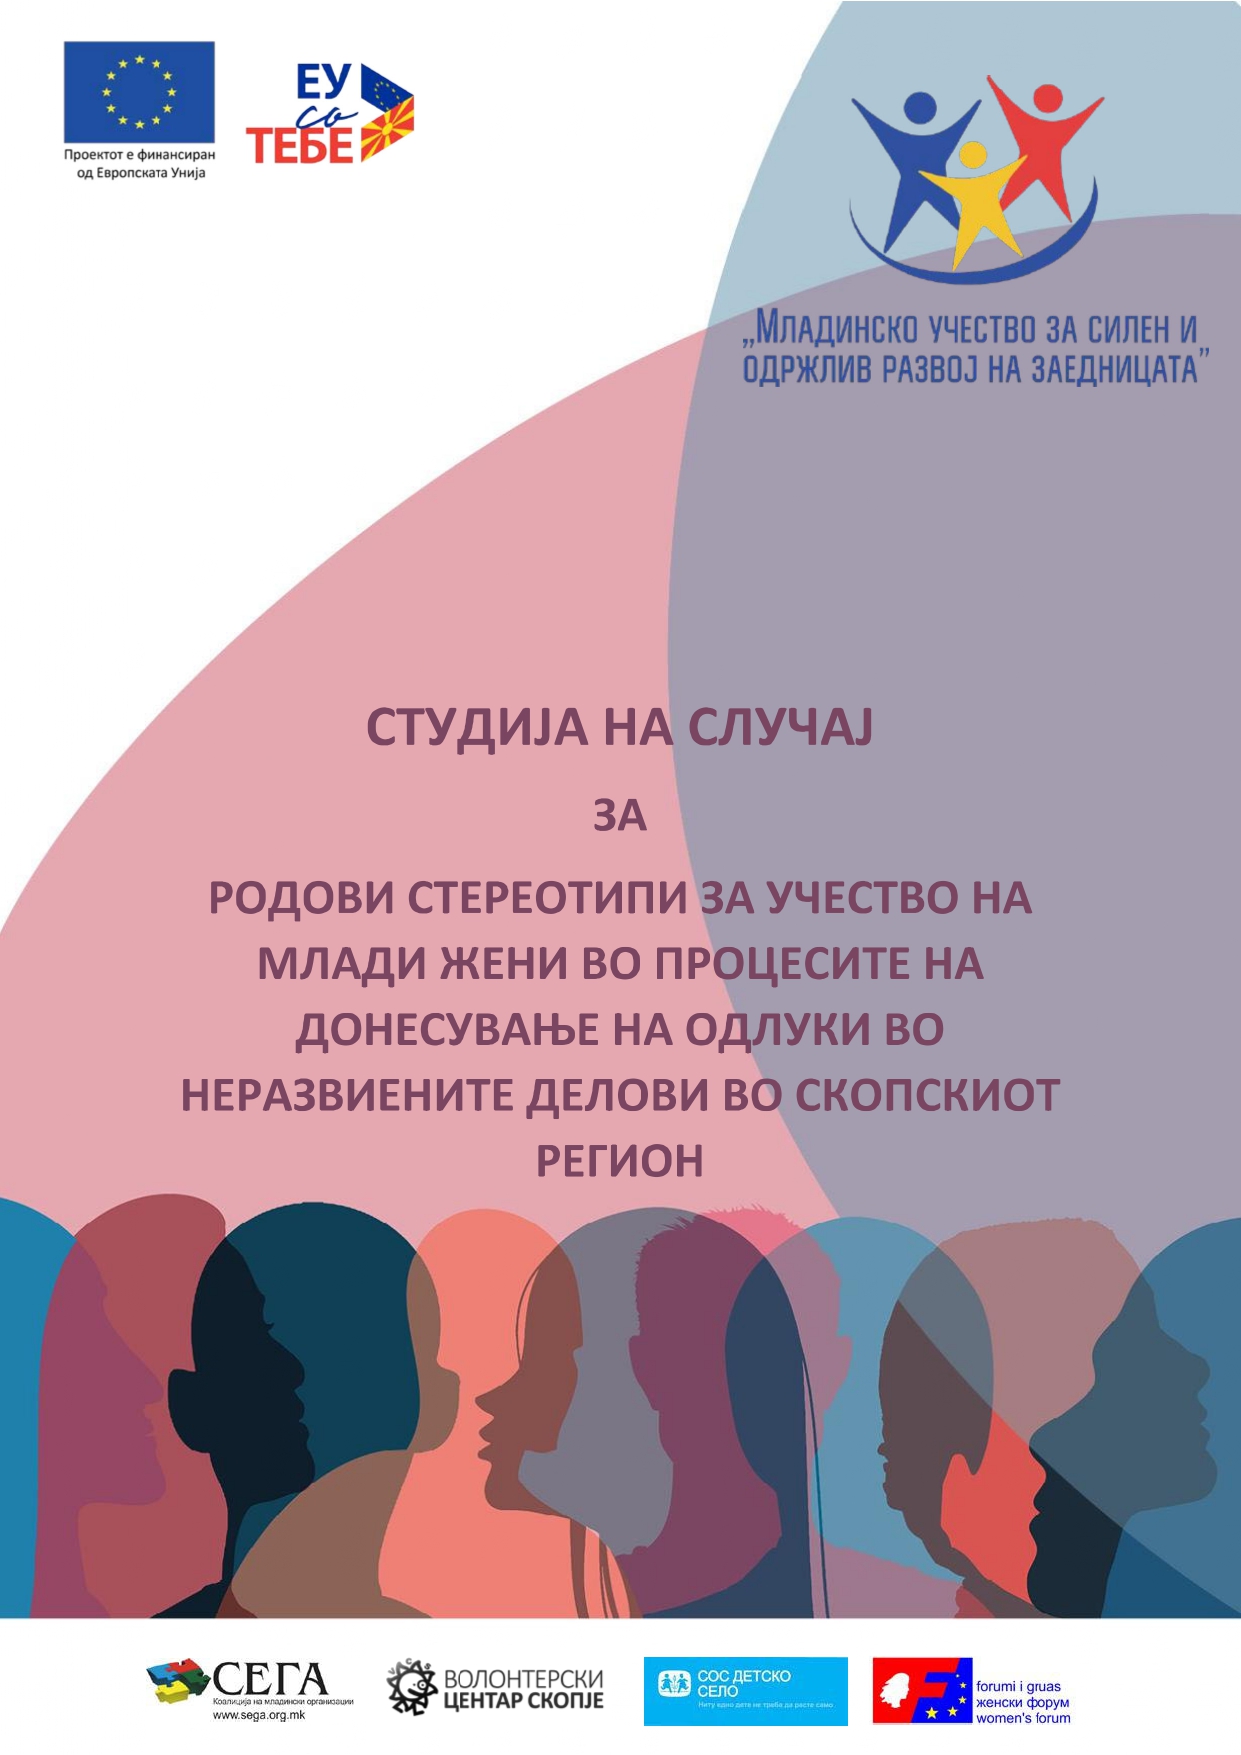 You are currently viewing (Македонски) Студија на случај за родови стереотипи за учество на млади жени